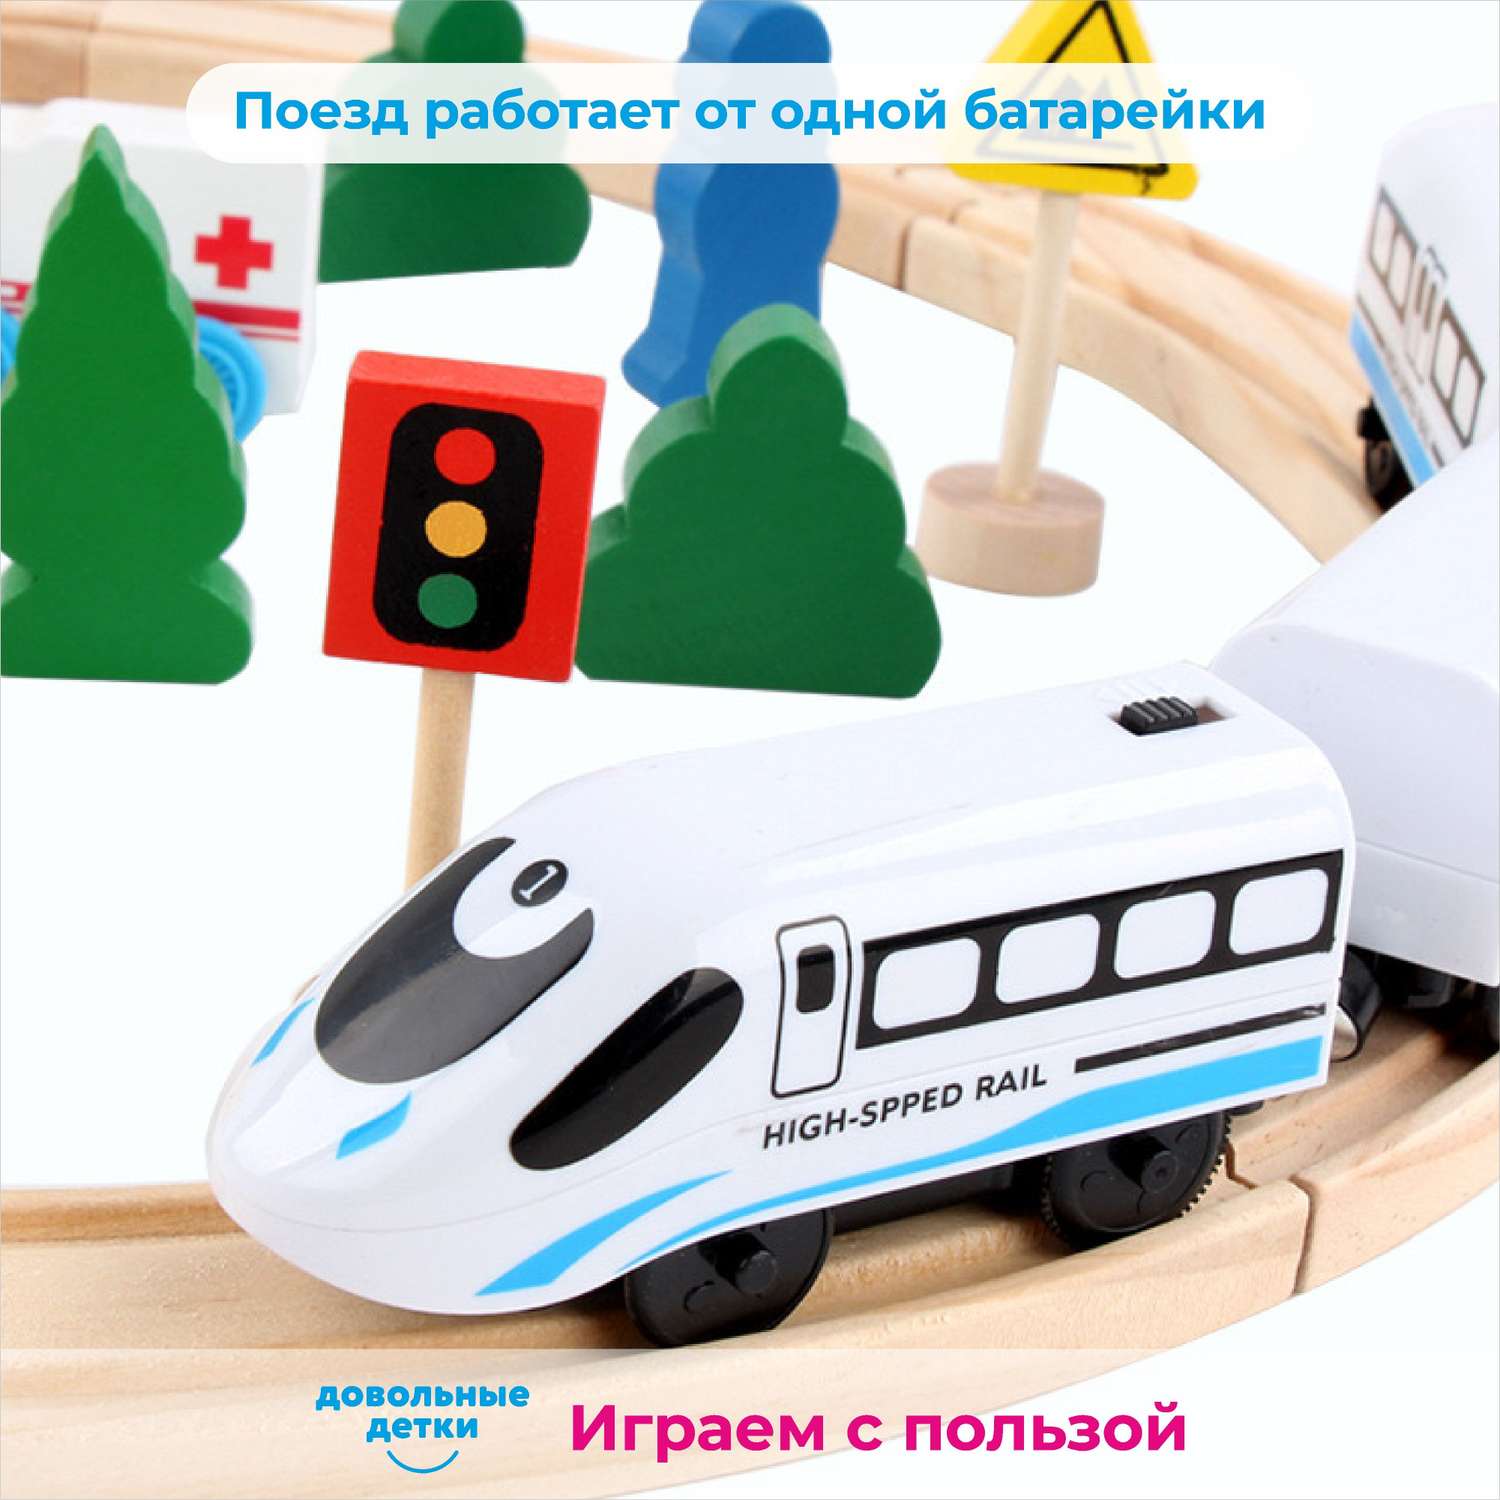 Железная дорога Довольные детки деревянная с поездом на батарейках локомотивом и рельсами AF-GDC - фото 6